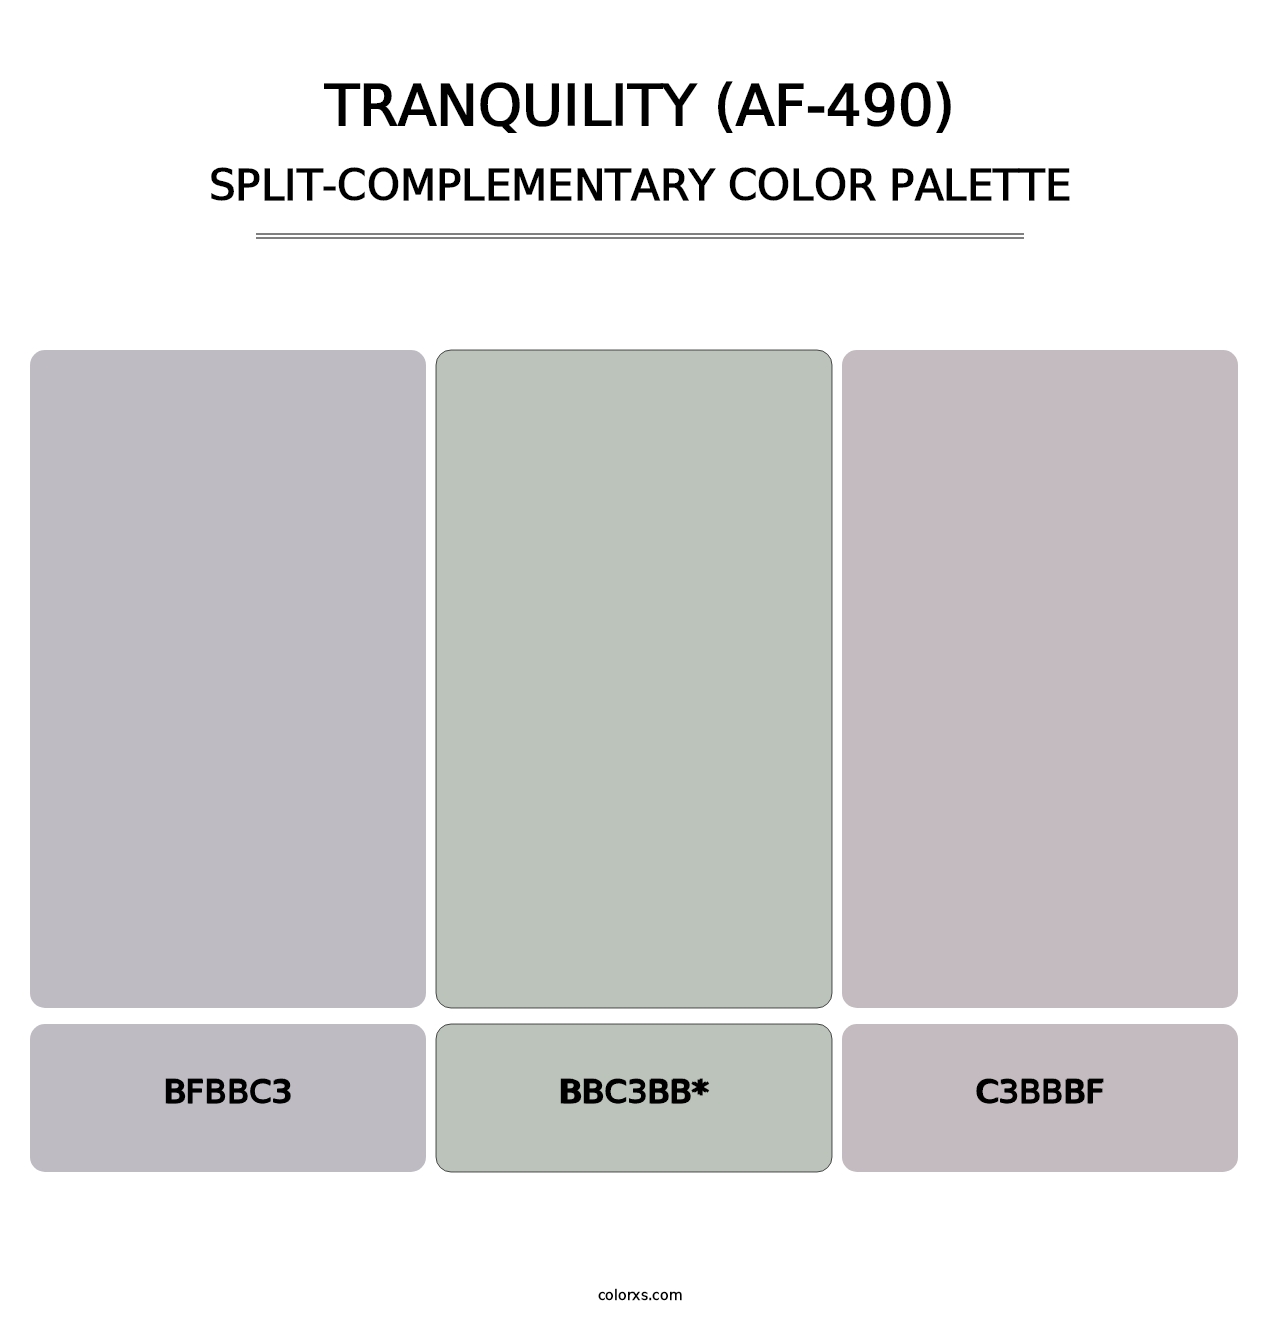 Tranquility (AF-490) - Split-Complementary Color Palette